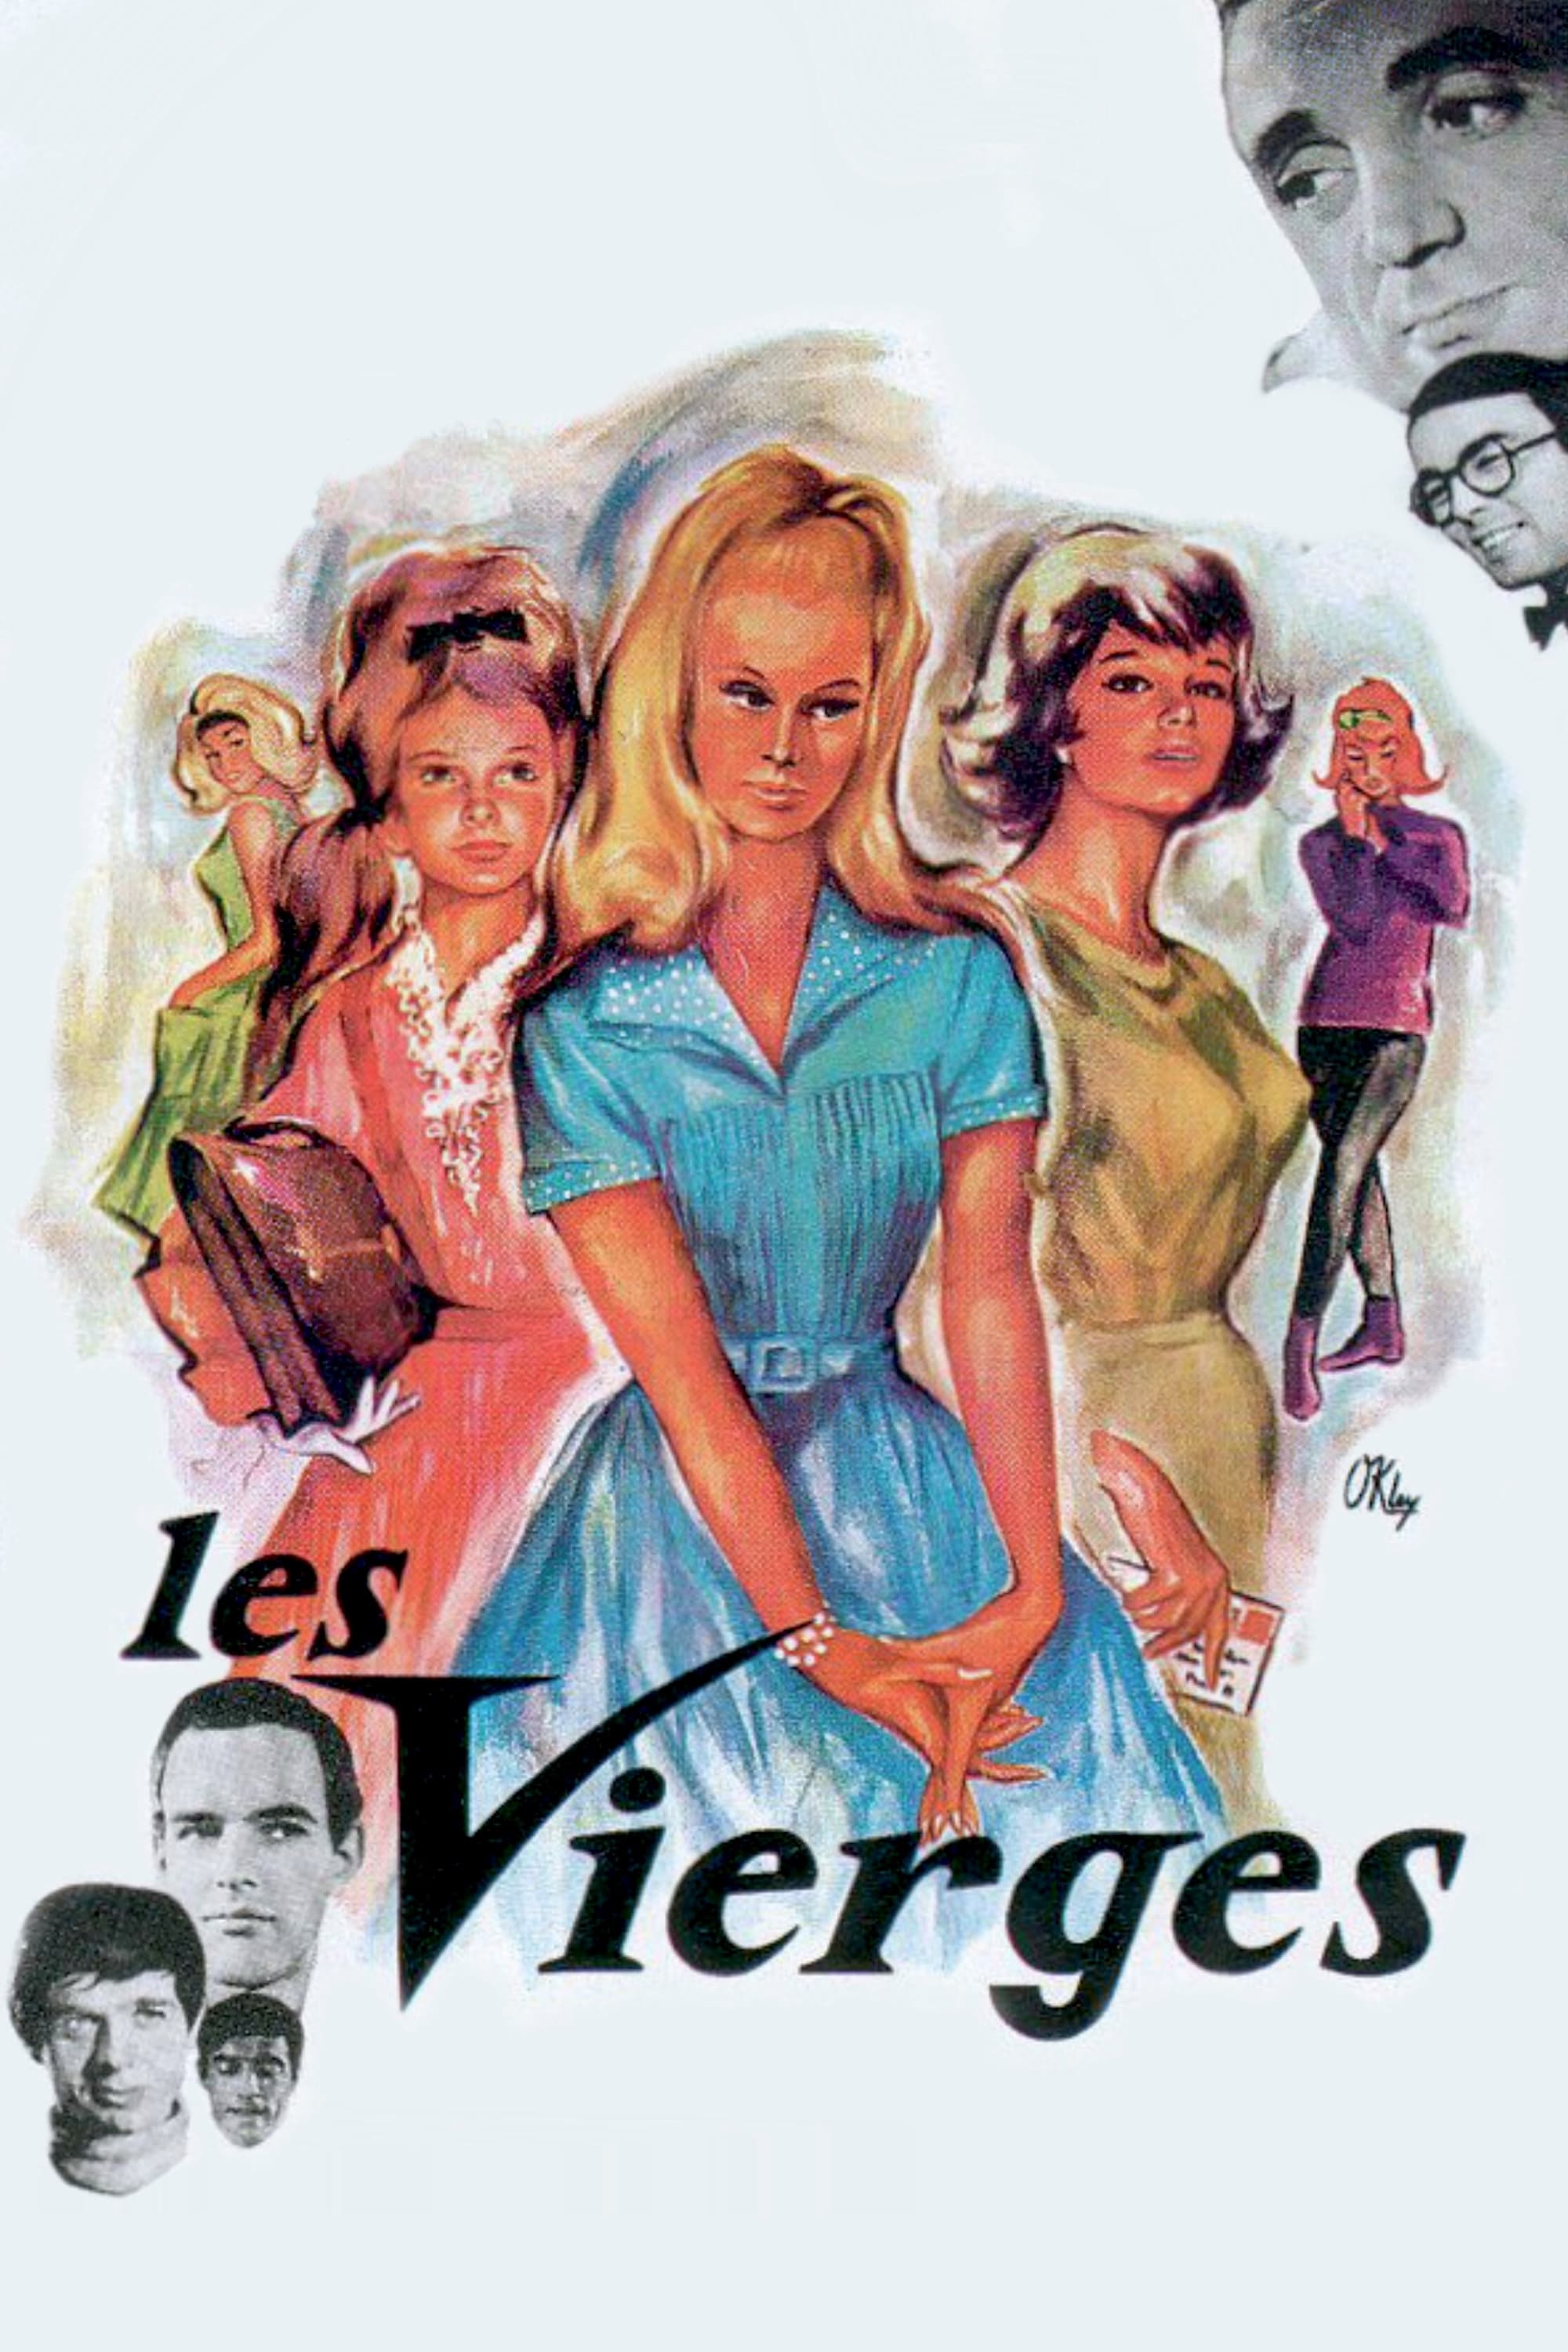 The Virgins (1963)